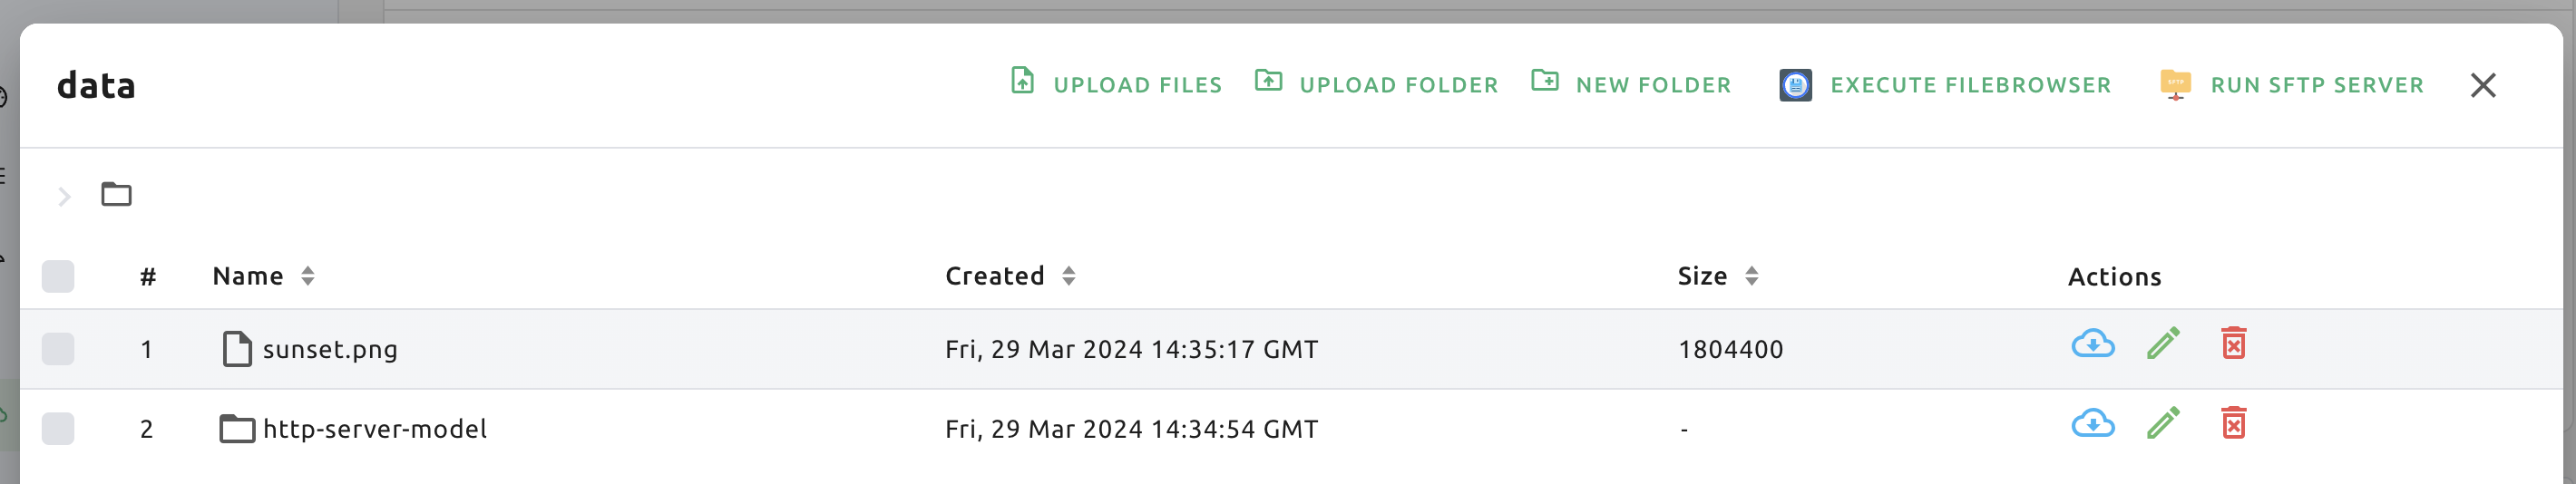 File explorer of a storage folder